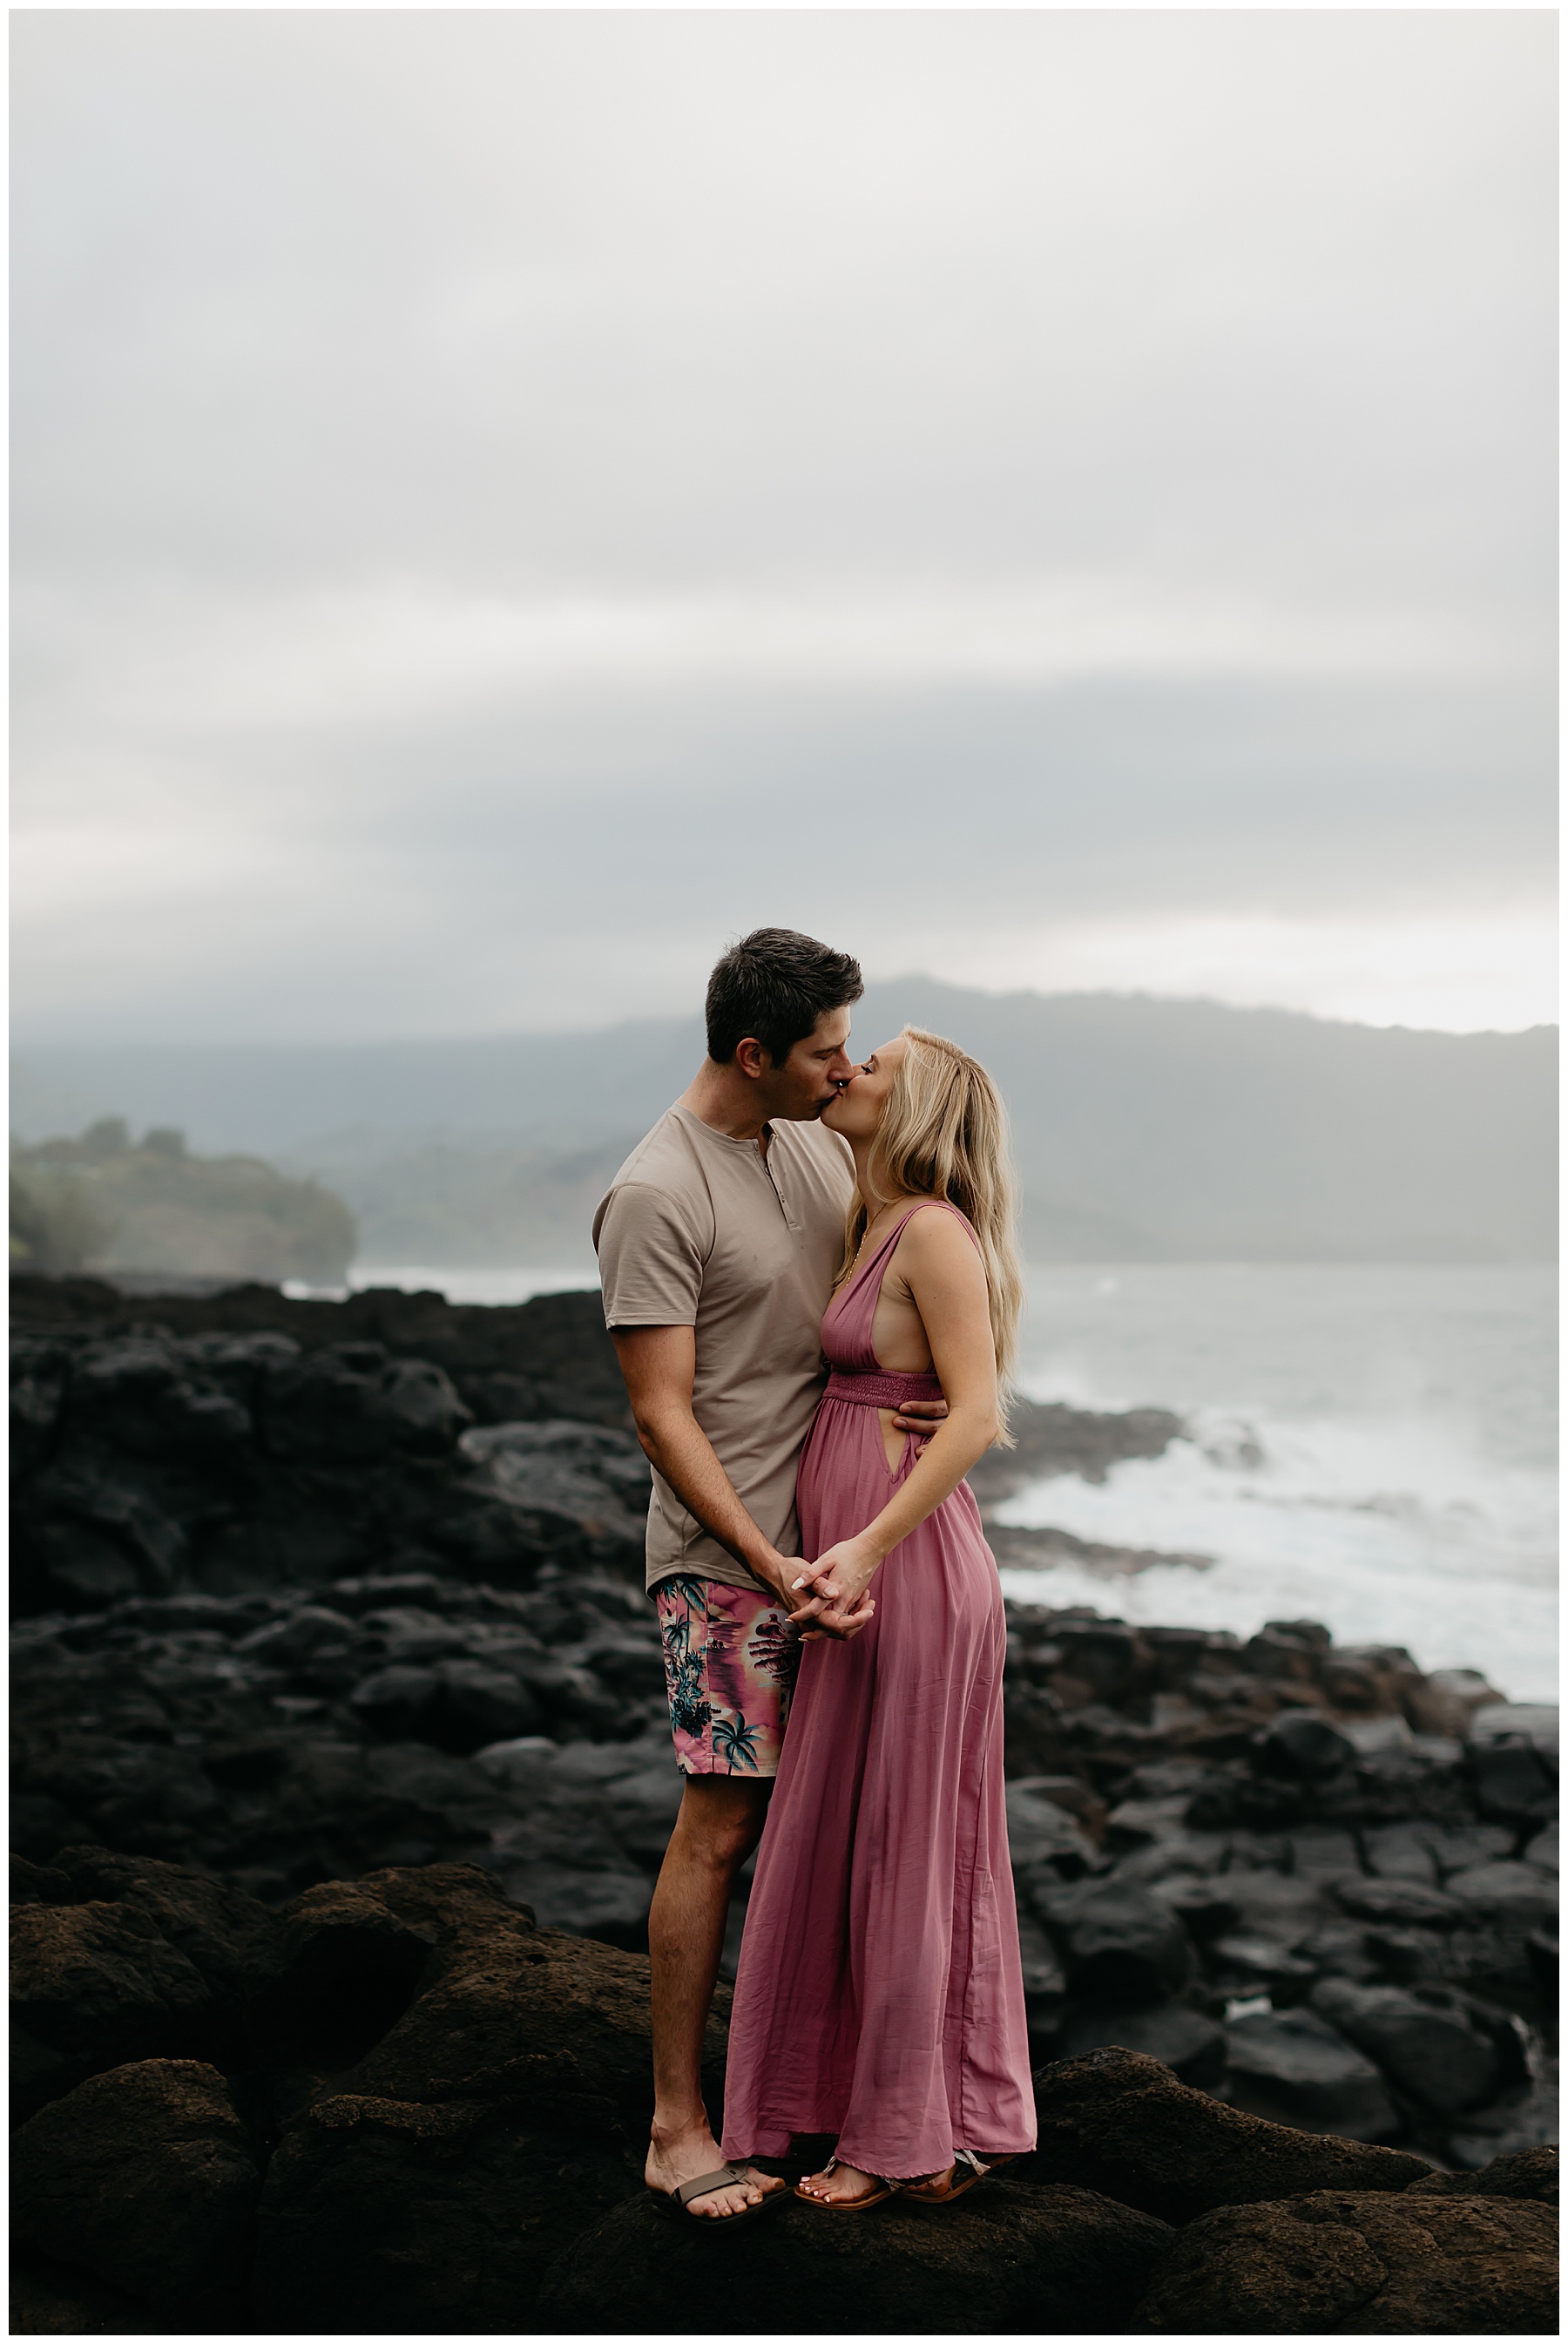 Lauren Burnham and Arie Luyendyk Kauai Honeymoon Session pic